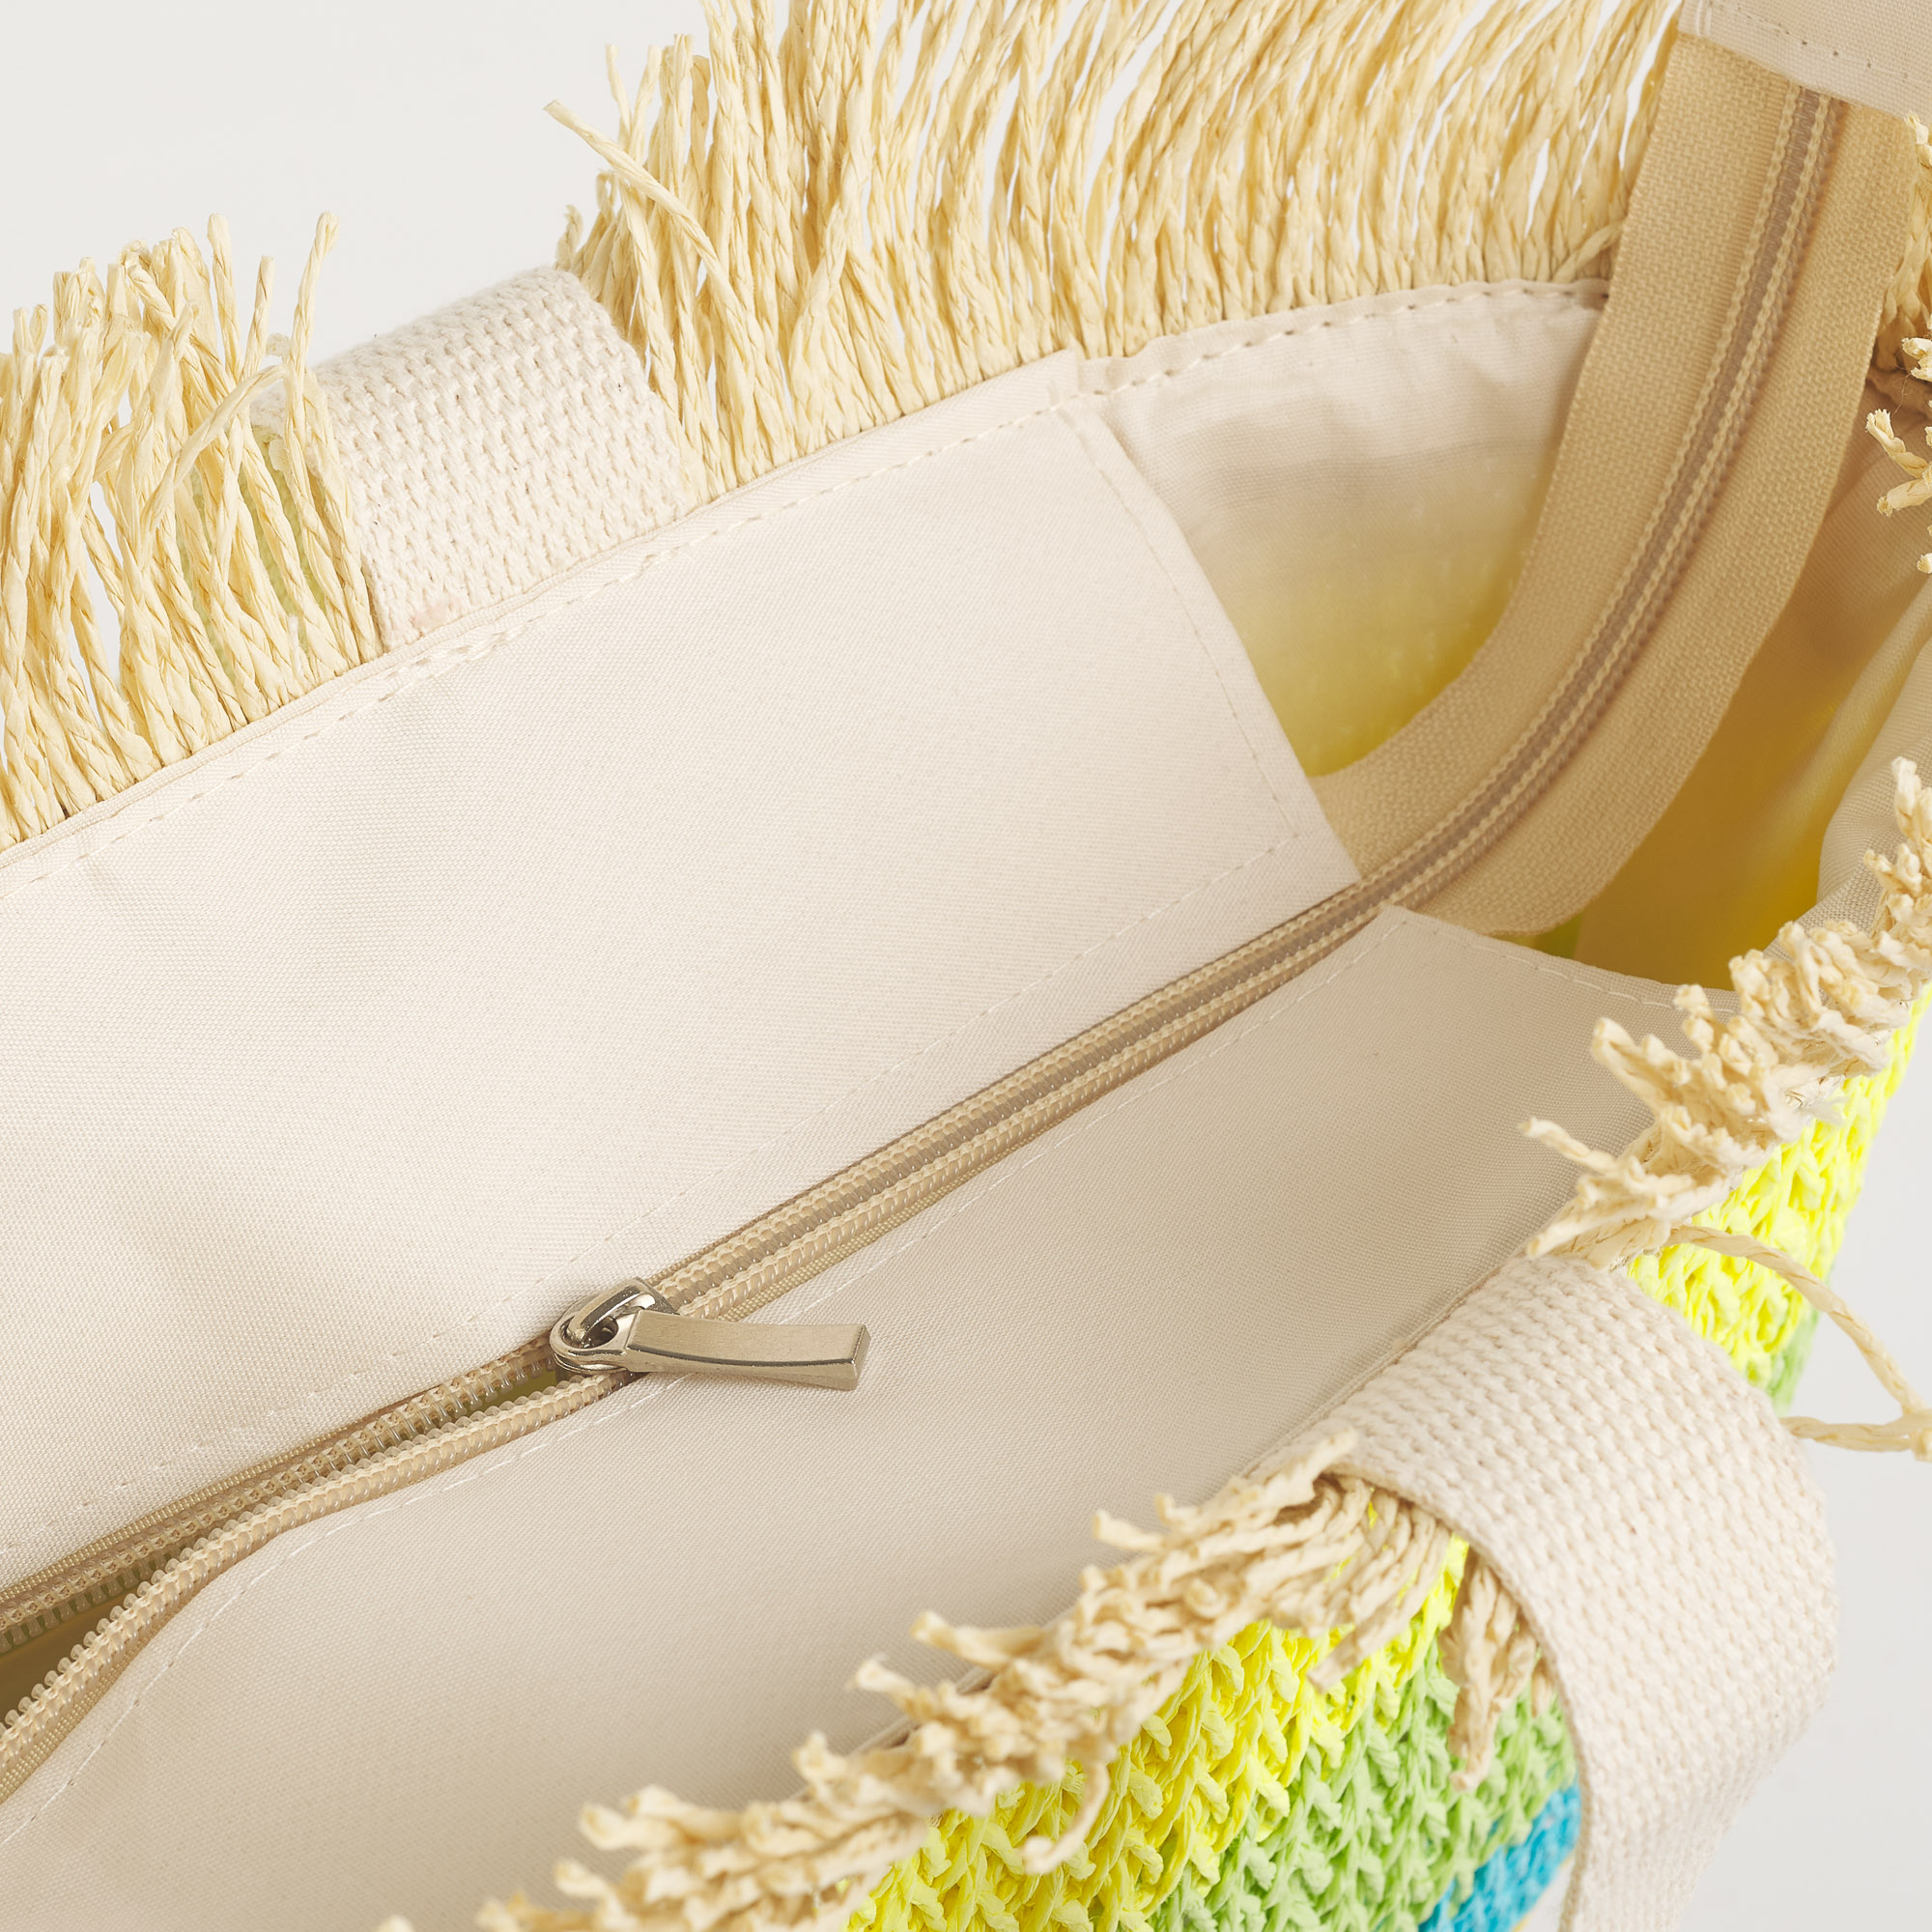 Пляжная сумка цвета пастельной радуги multicolor Maè